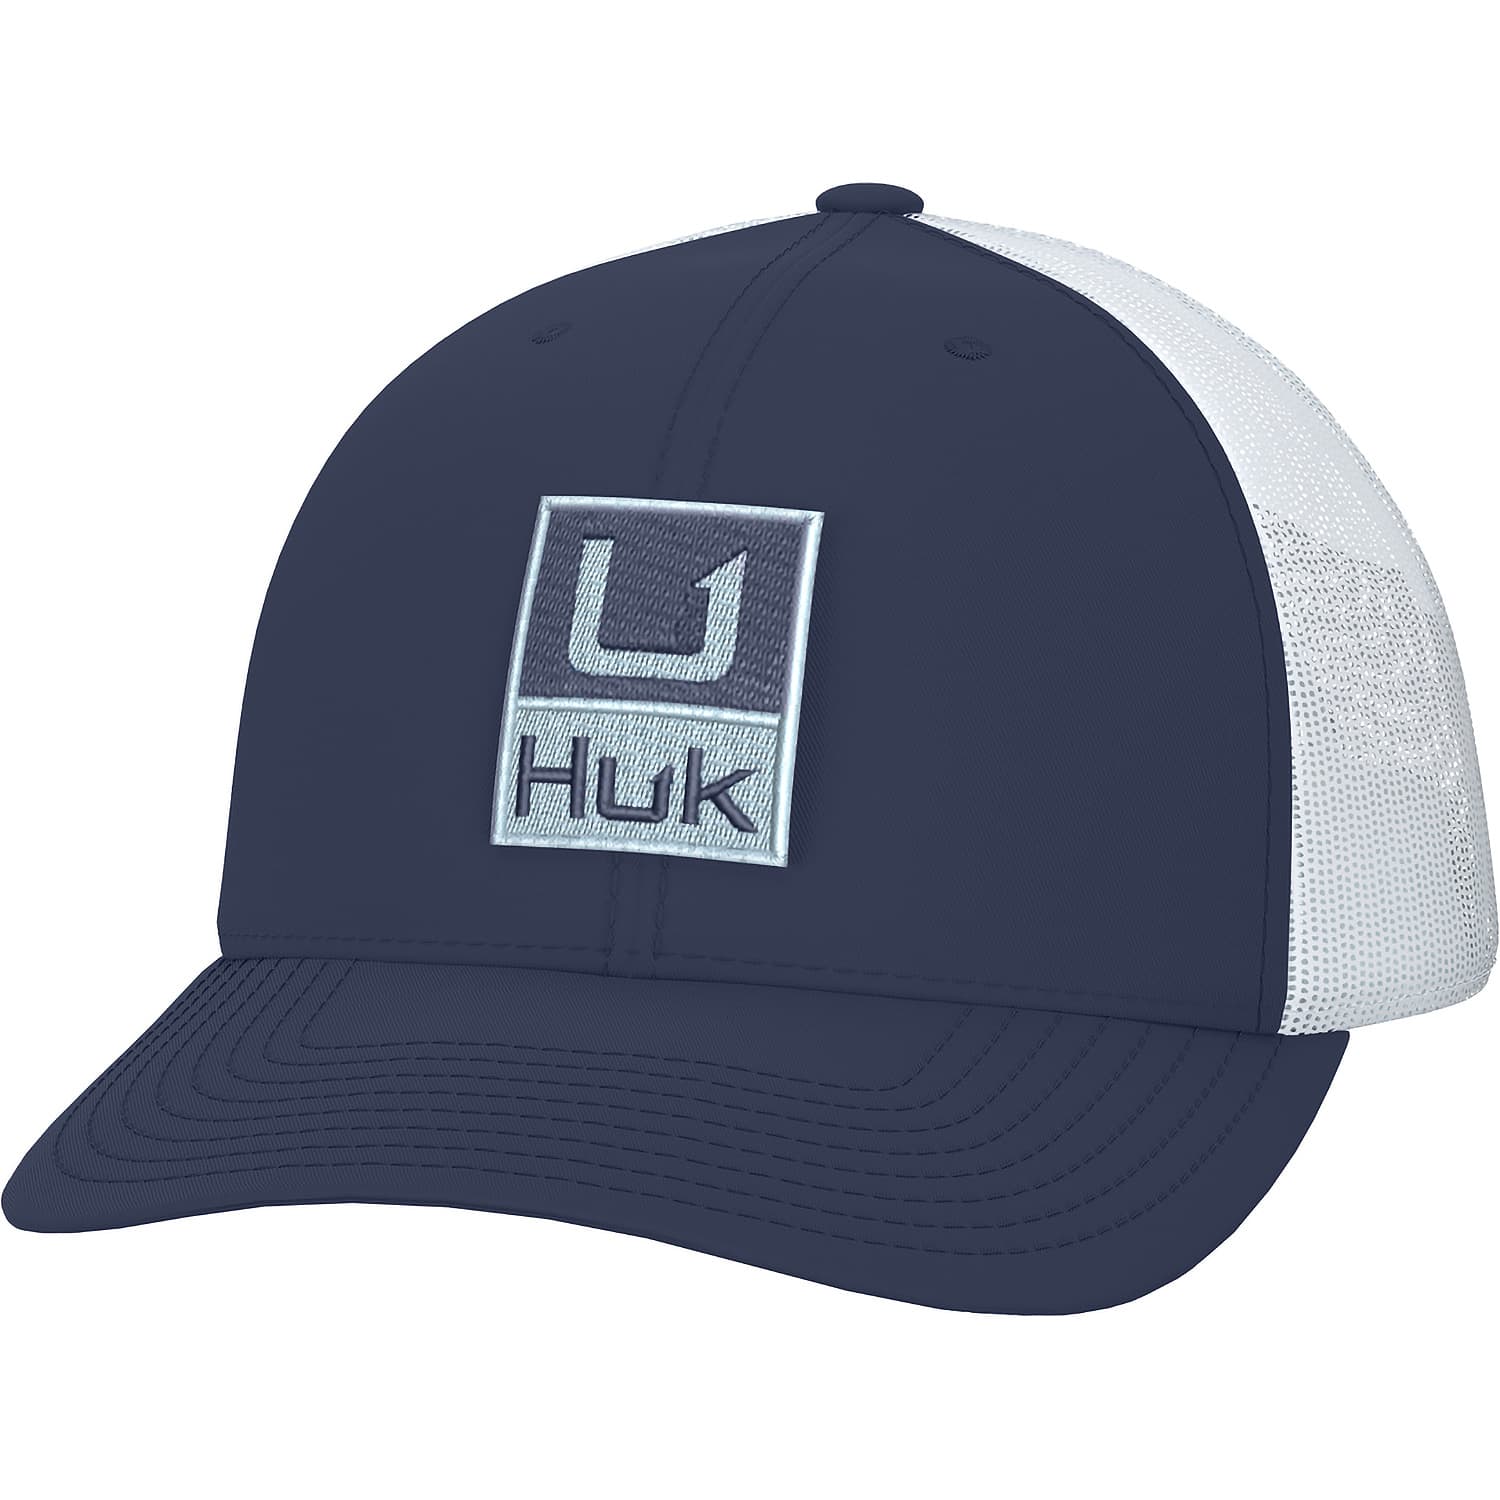 Huk Men’s Huk’d Up Trucker Cap - Cabelas - HUK - Caps